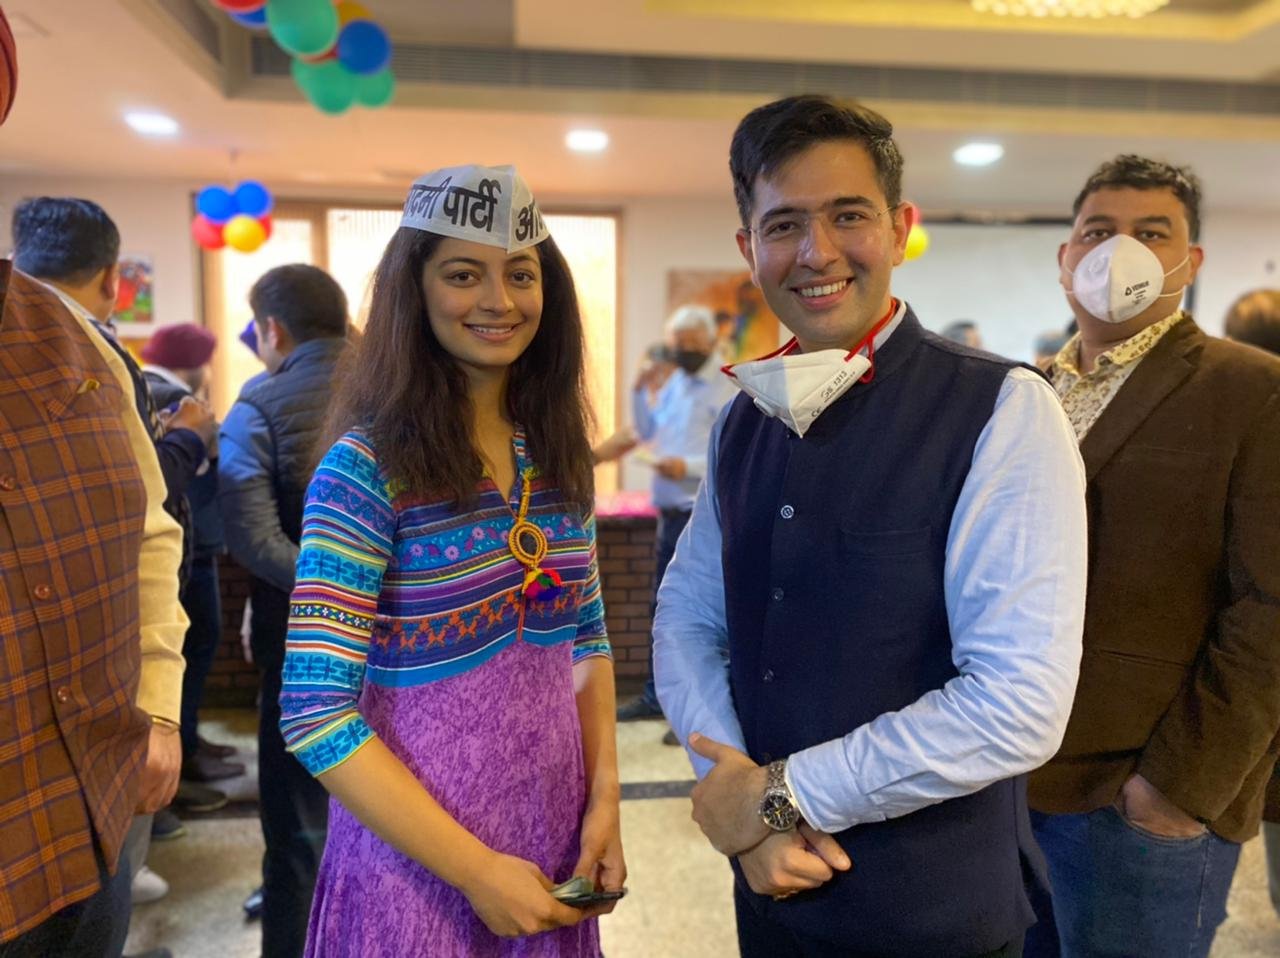 मिस इंडिया दिल्ली 2019 मानसी सहगल नेता राघव चड्ढा की मौजूदगी में की आम आदमी पार्टी (आप) में शामिल